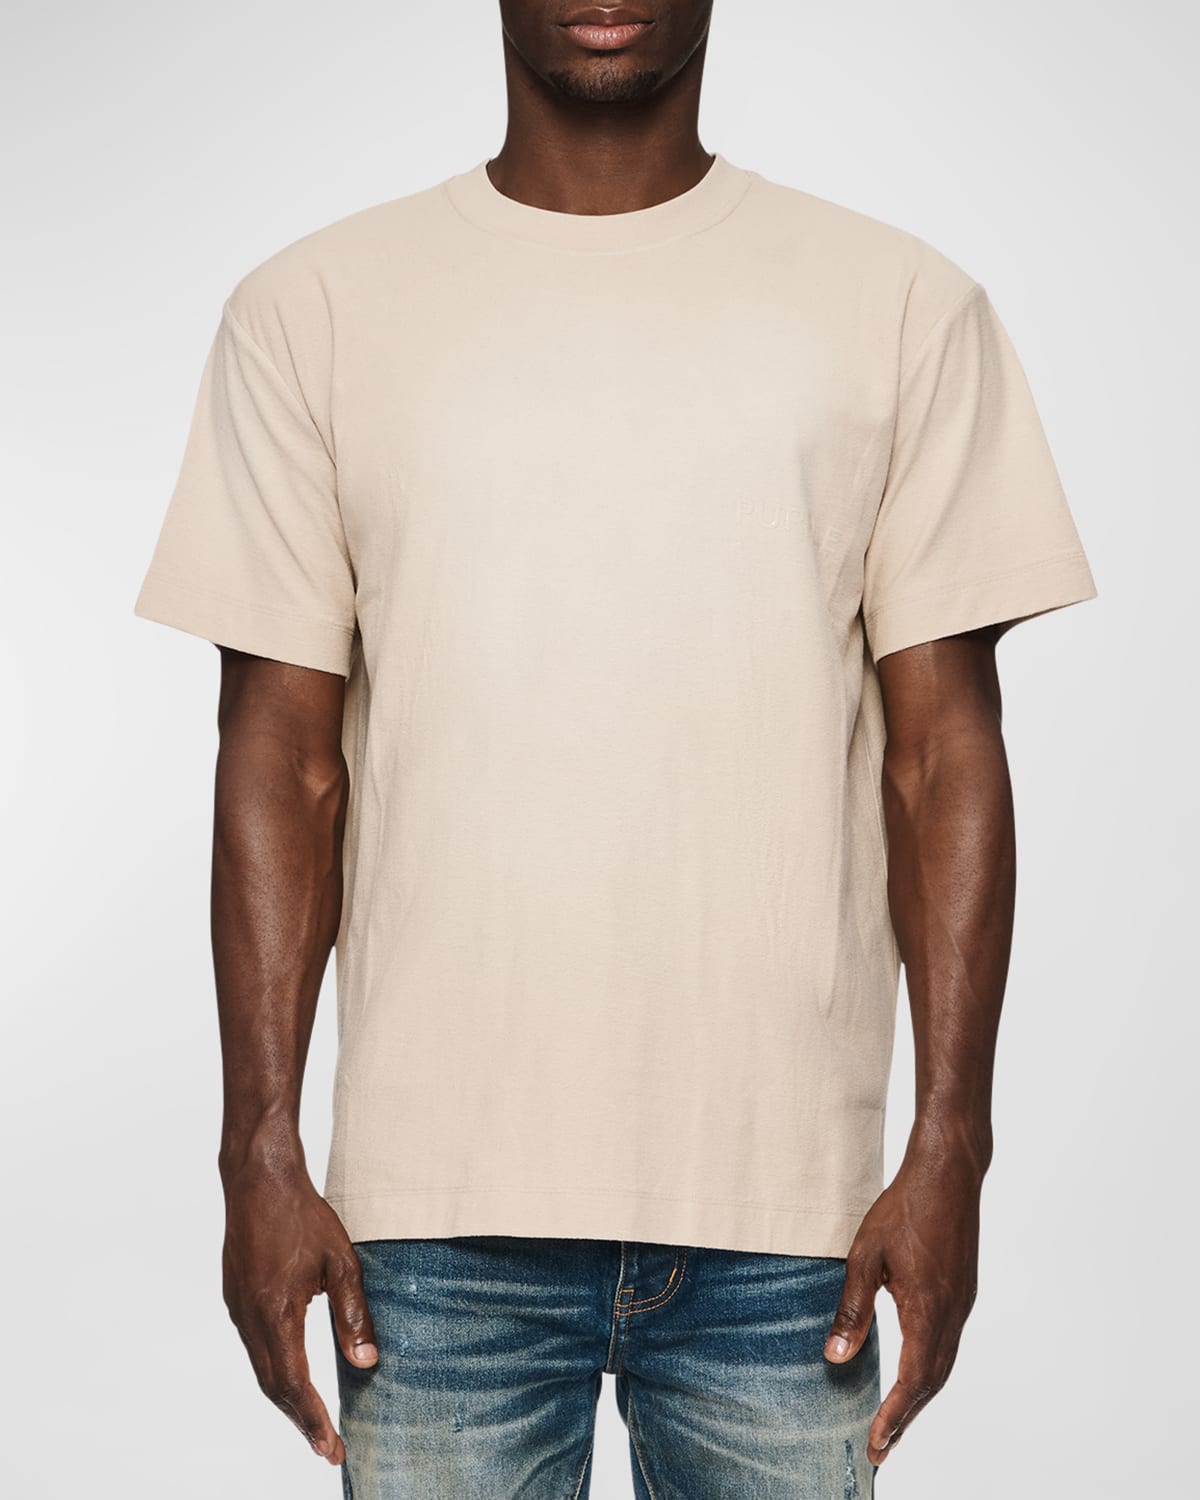 Men's Textured Jersey T-Shirt